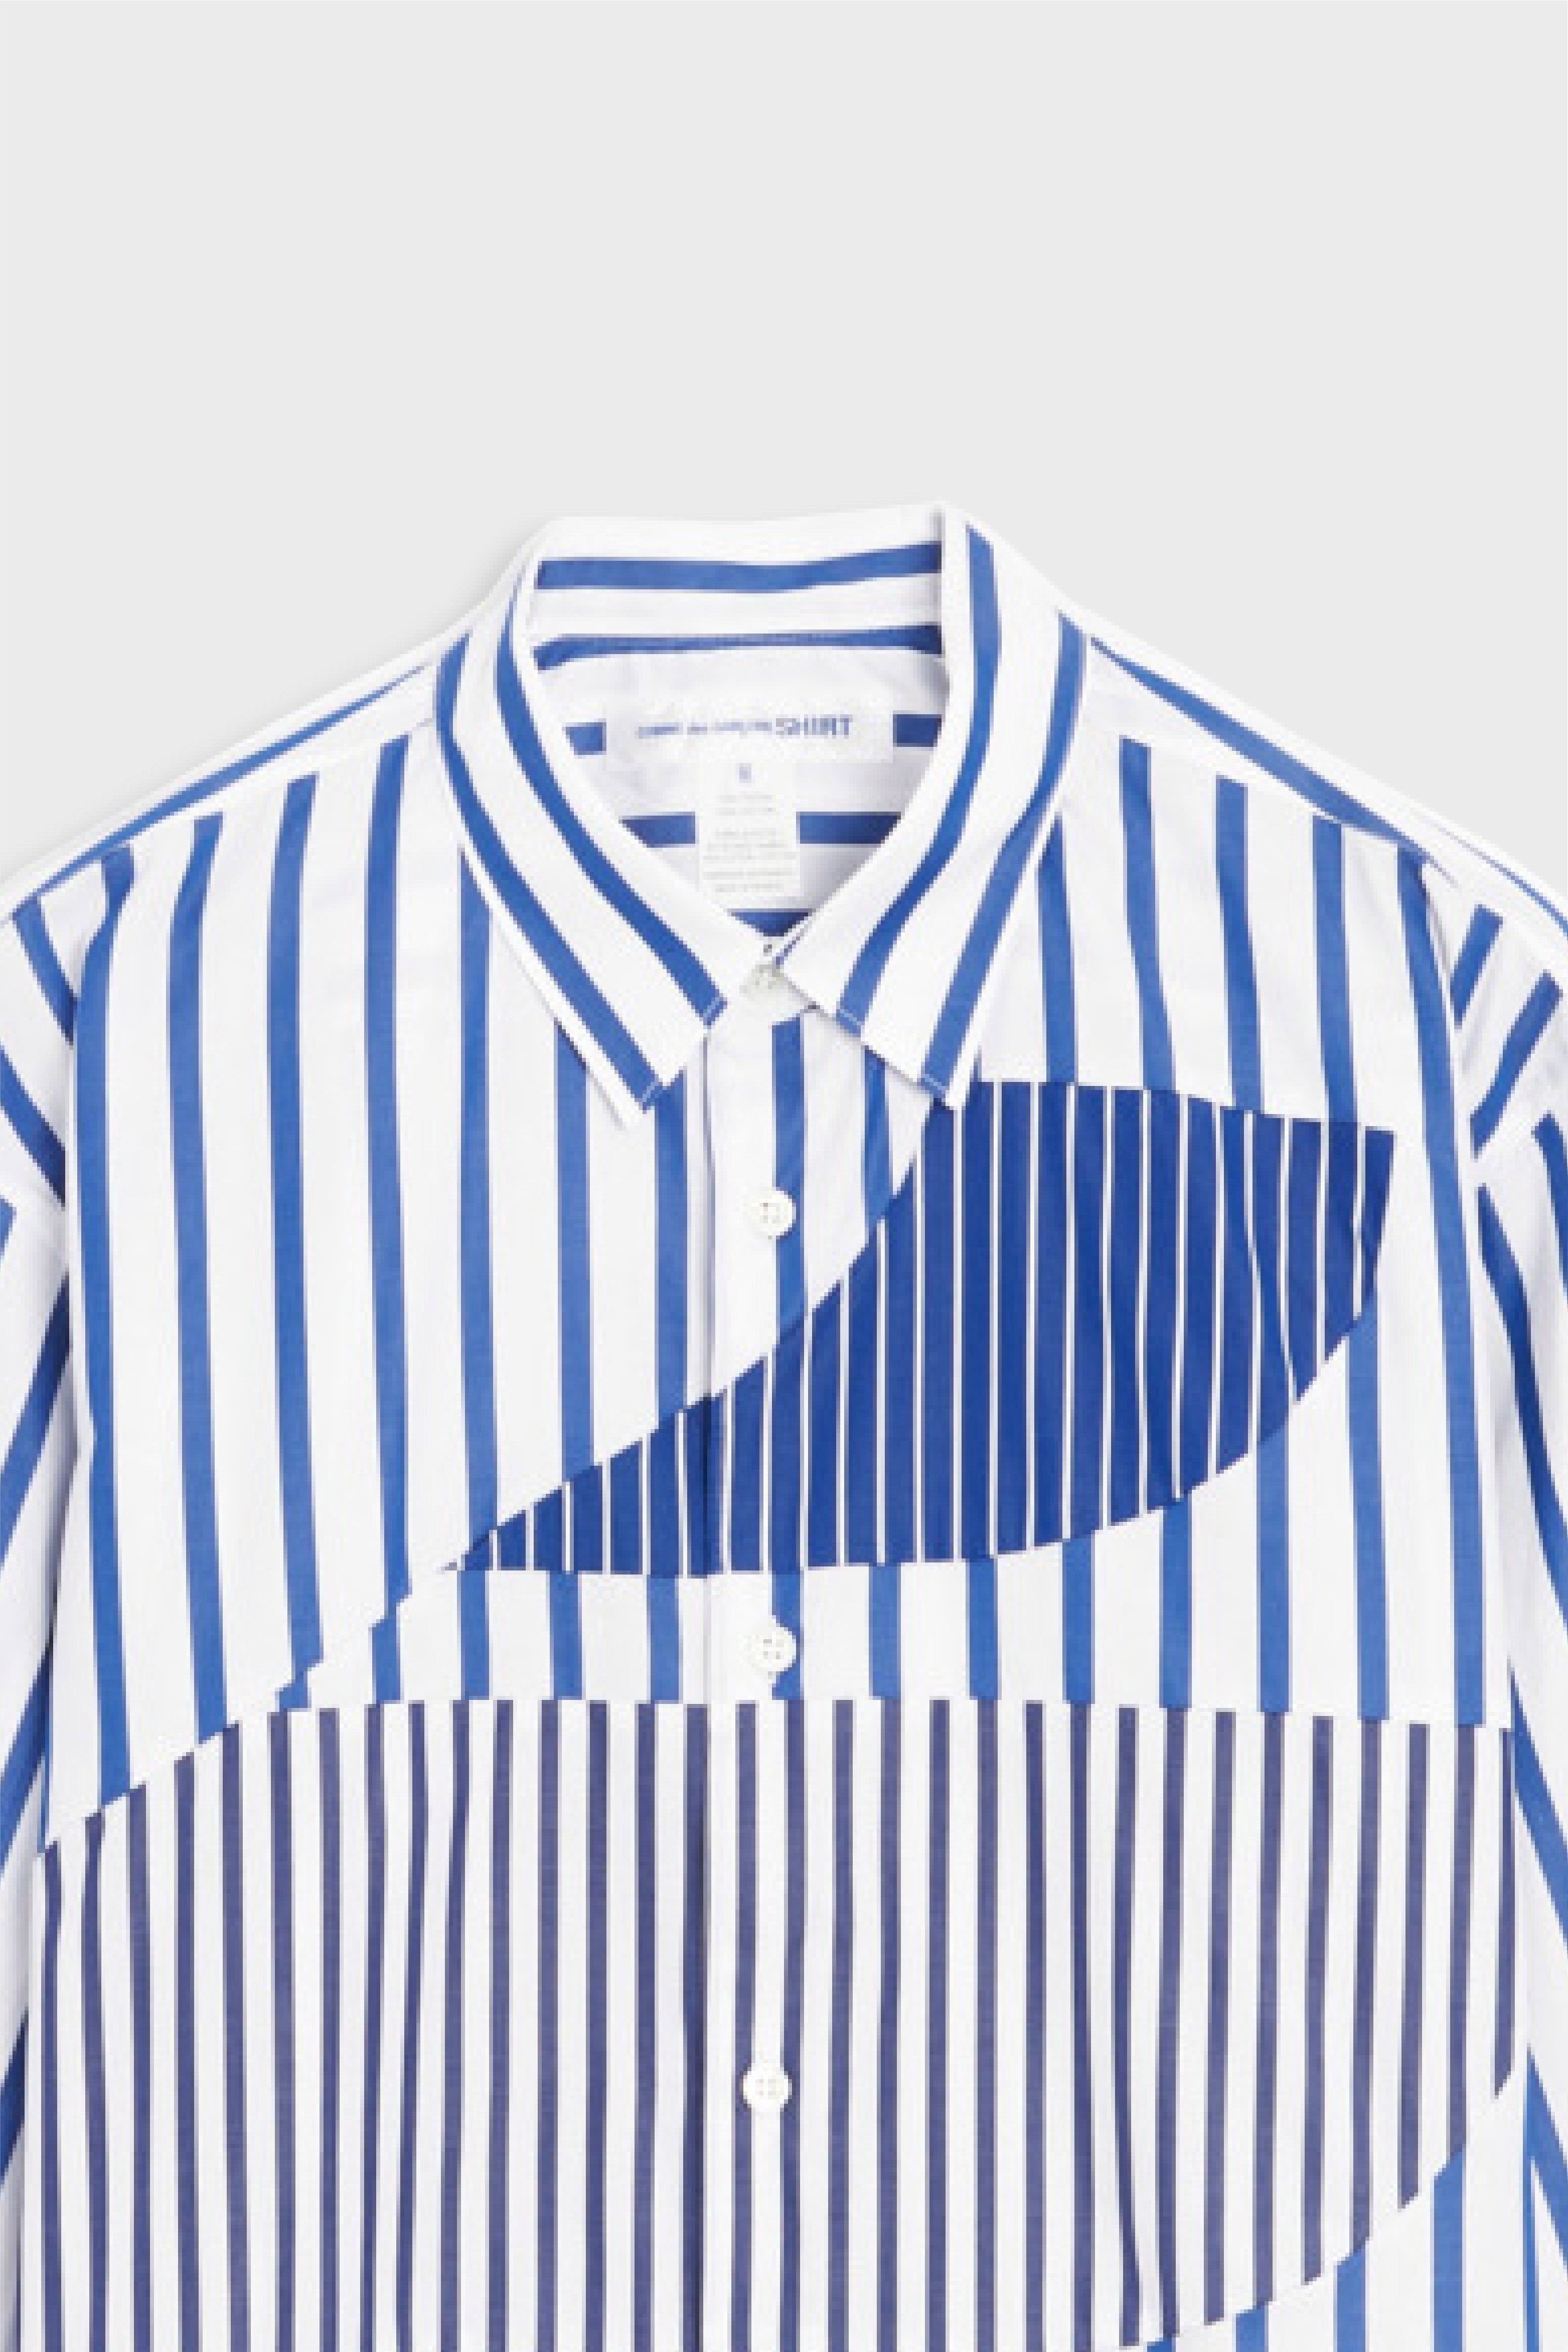 Selectshop FRAME - COMME DES GARÇONS SHIRT Shirt Shirts Concept Store Dubai